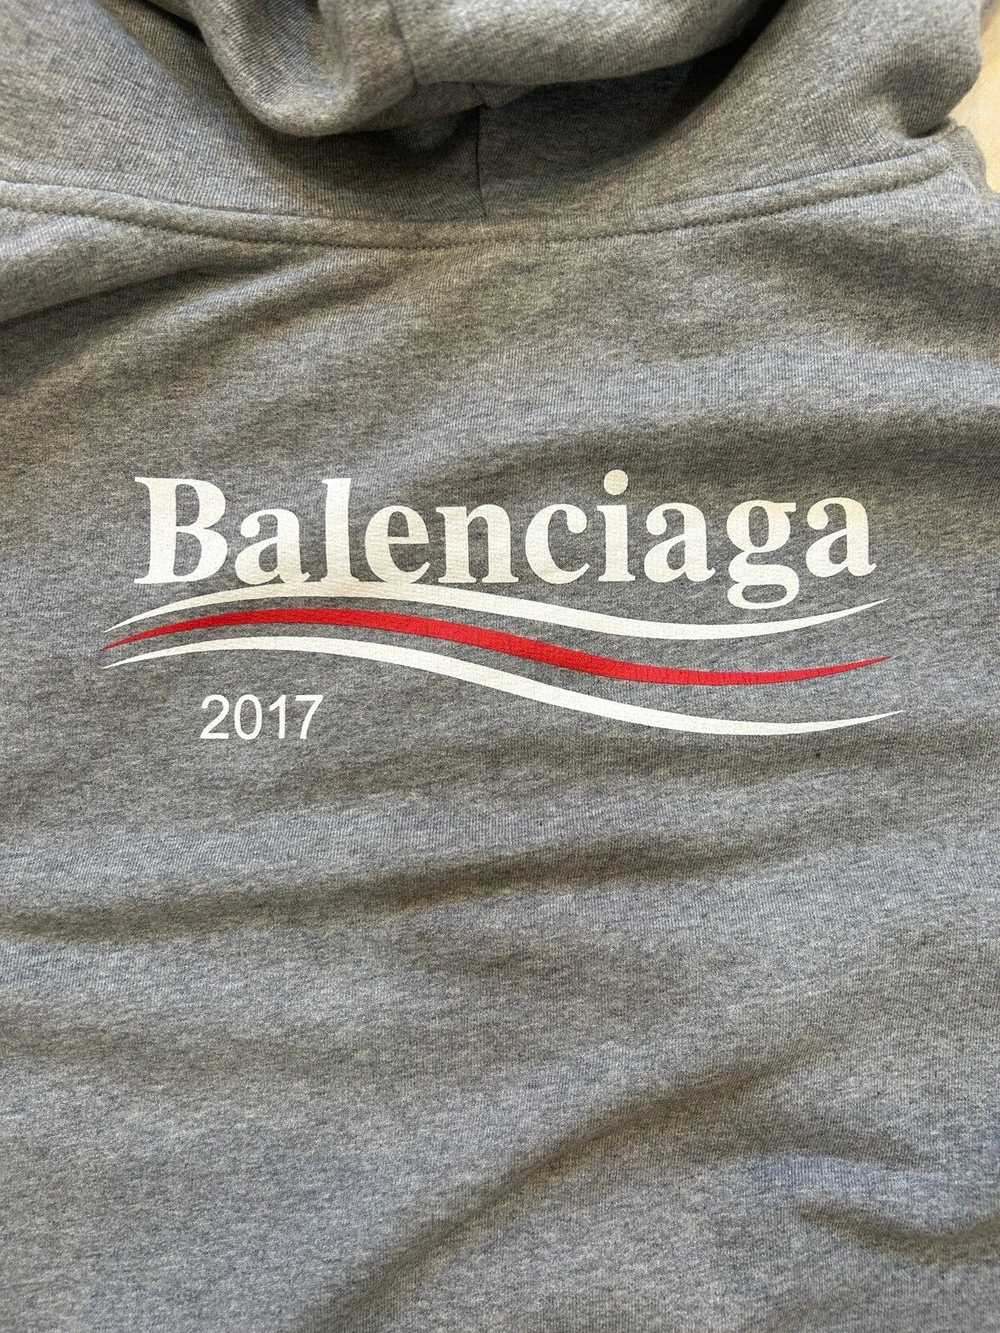 Balenciaga BALENCIAGA CAMPAIGN 2017 ZIP UP - image 4